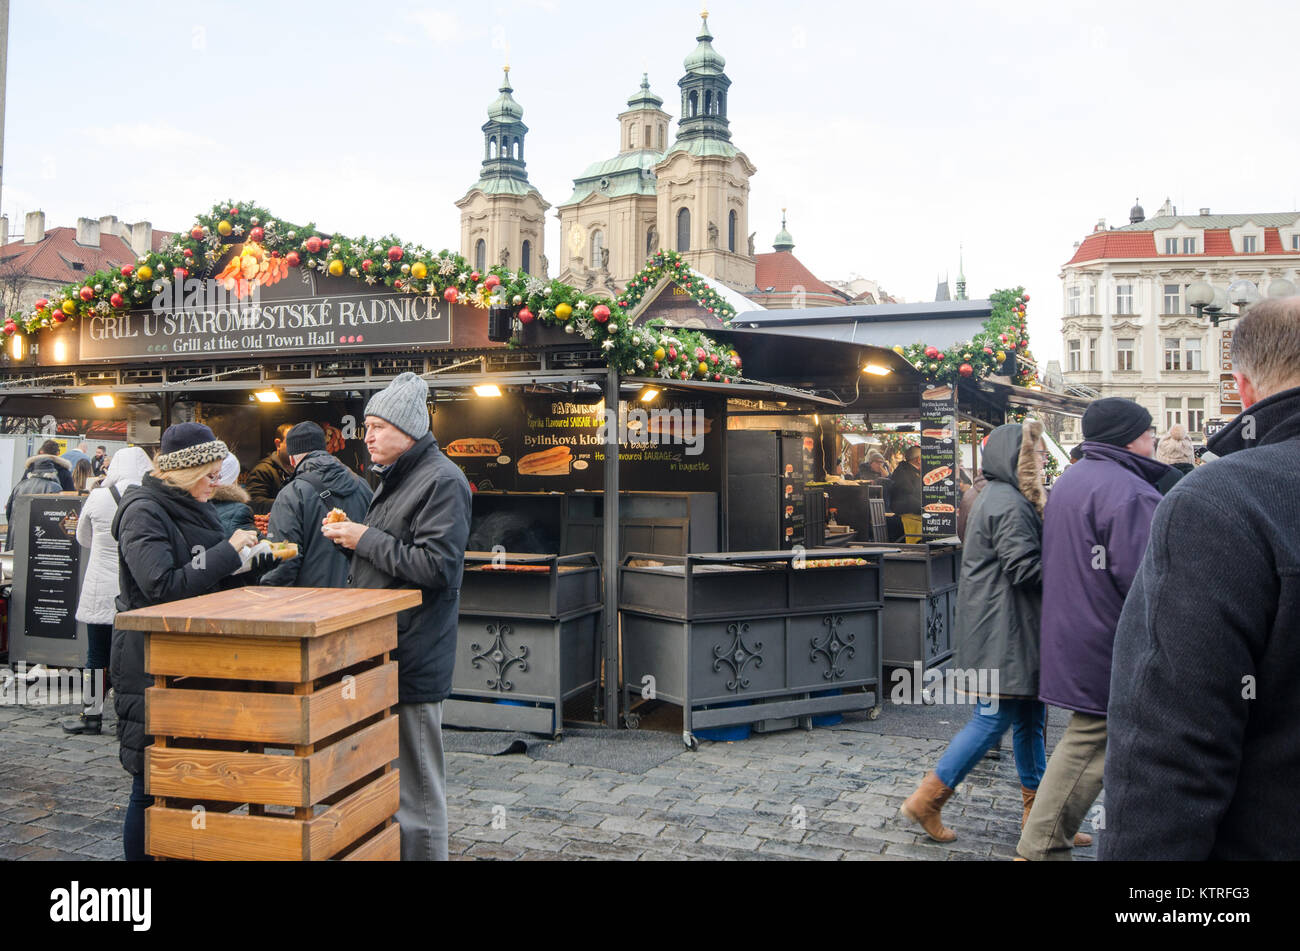 In Prag in der Tschechischen Republik-5 Dezember 2017: Große Gruppe Touristen in alten Rathausplatz Weihnachtsmarkt Essensstände Stockfoto